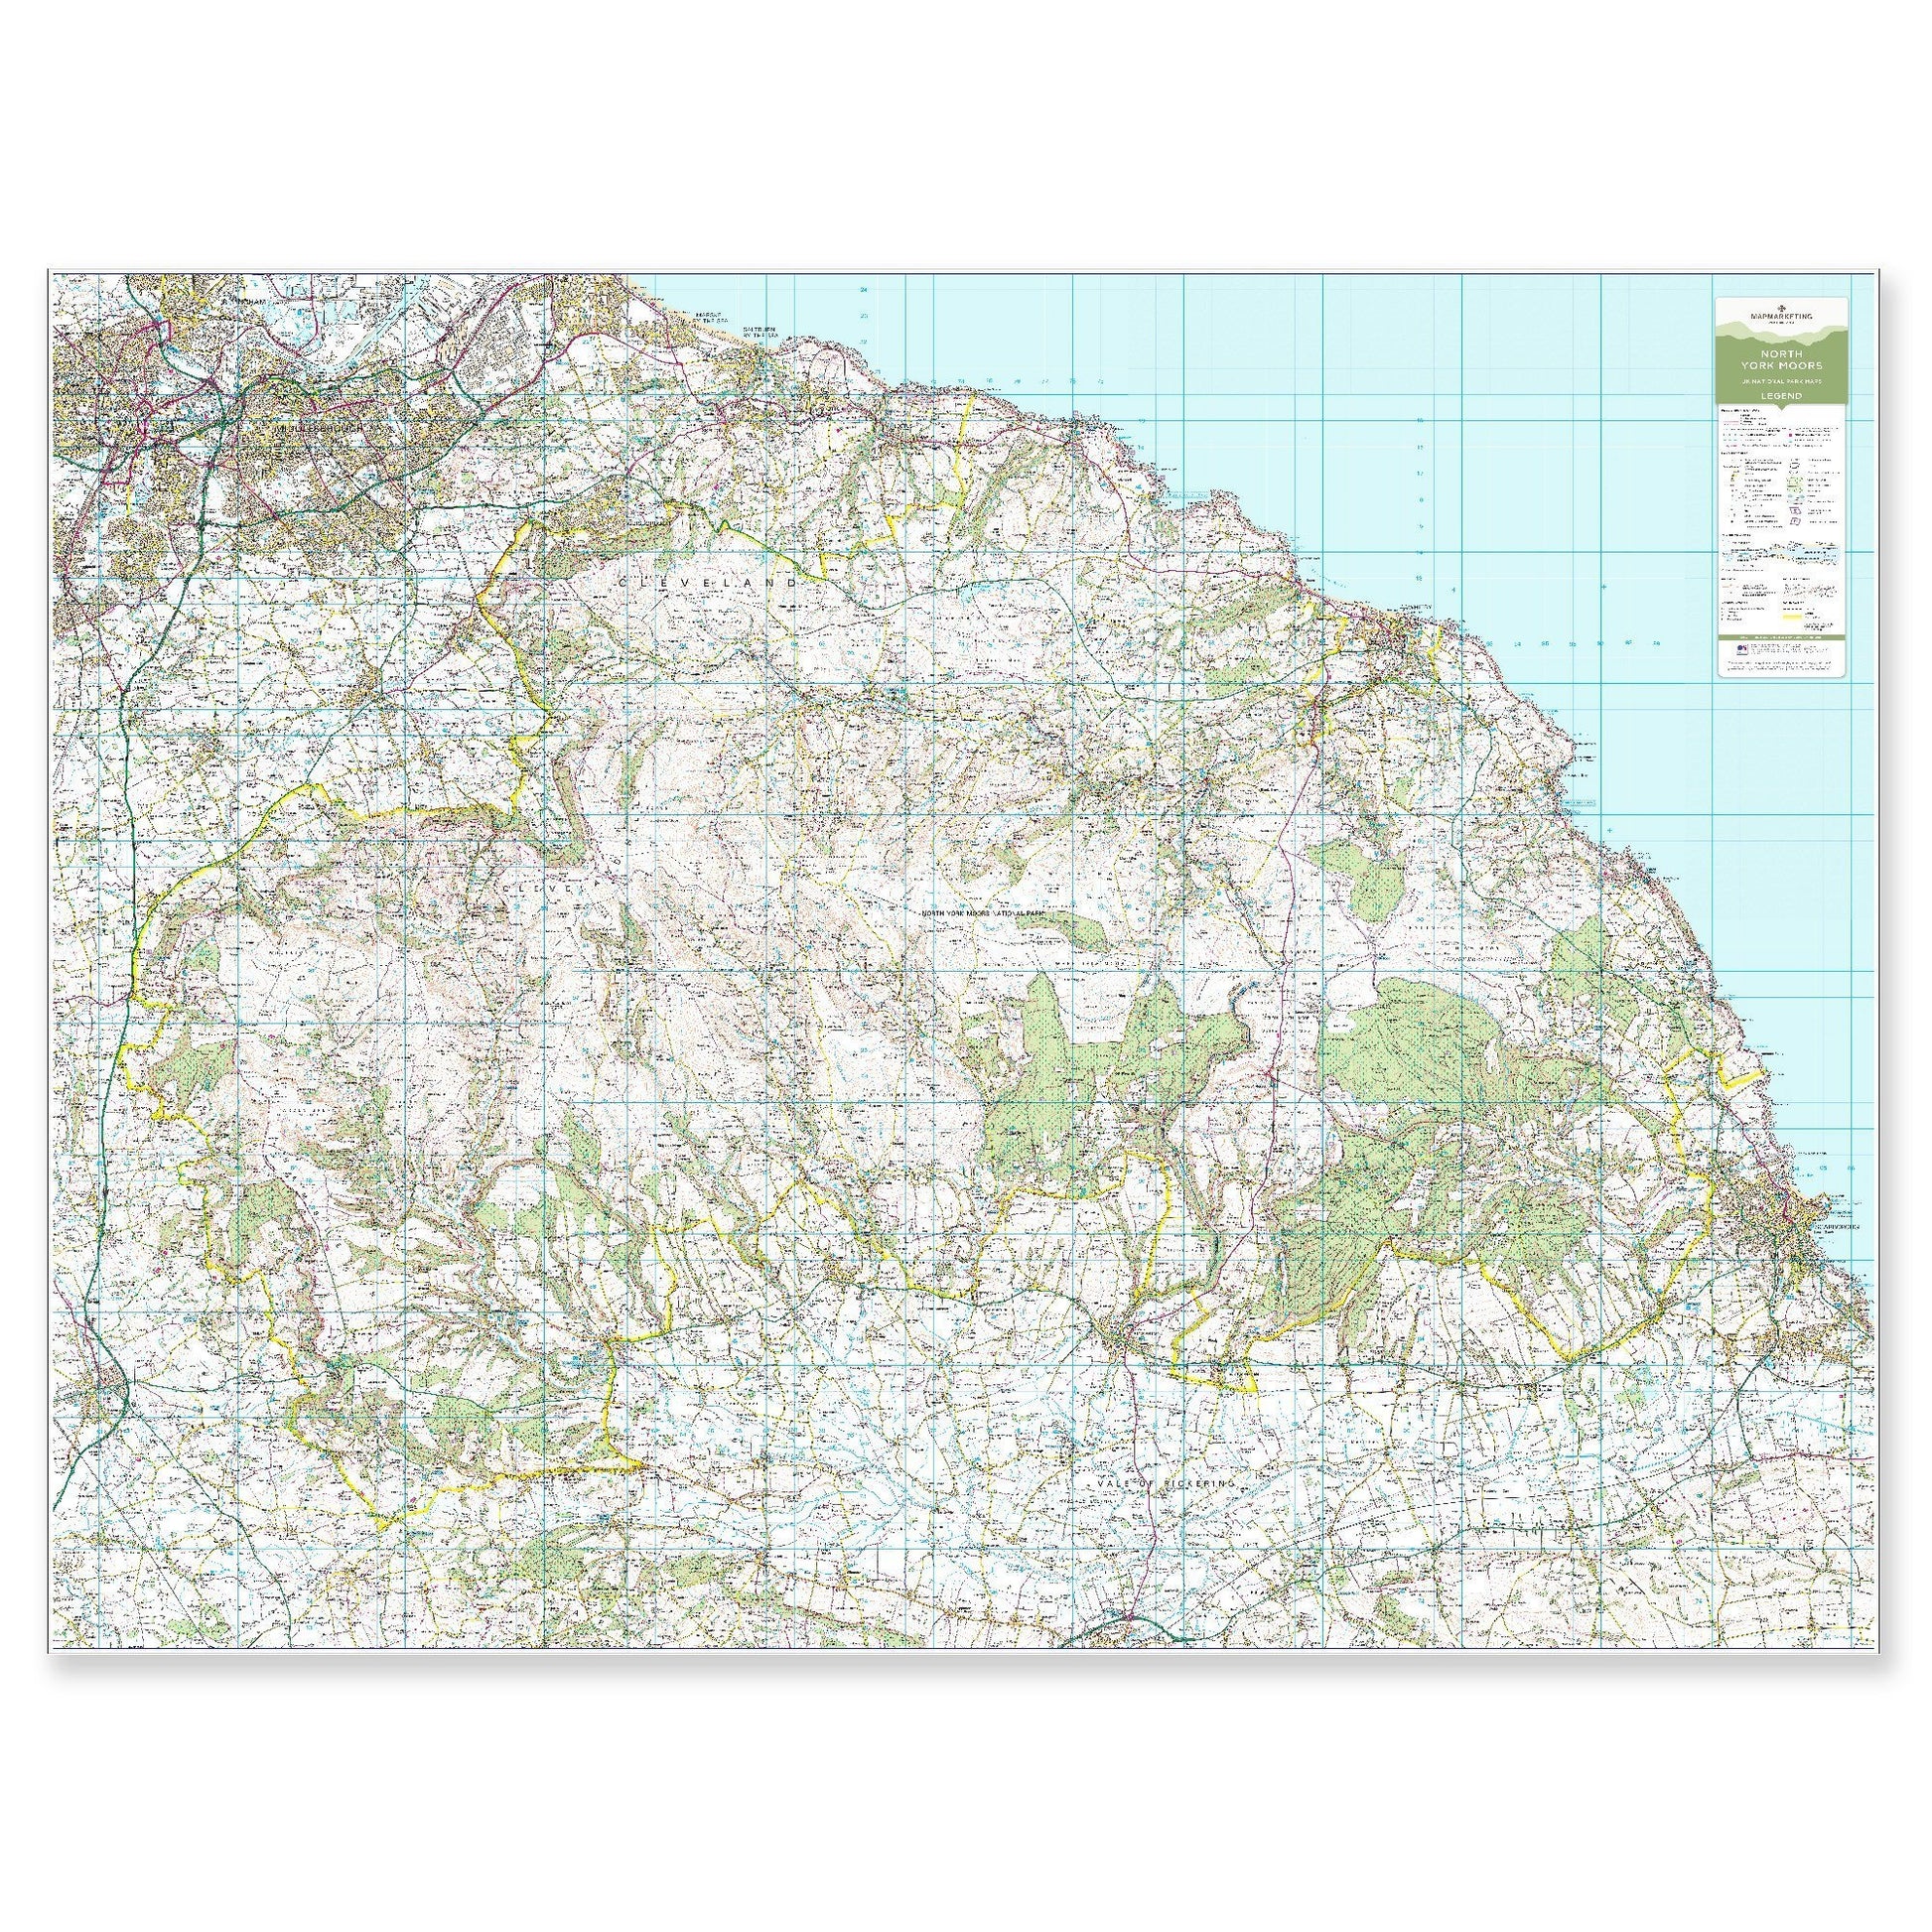 Wall Maps - North York Moors - UK National Park Wall Map